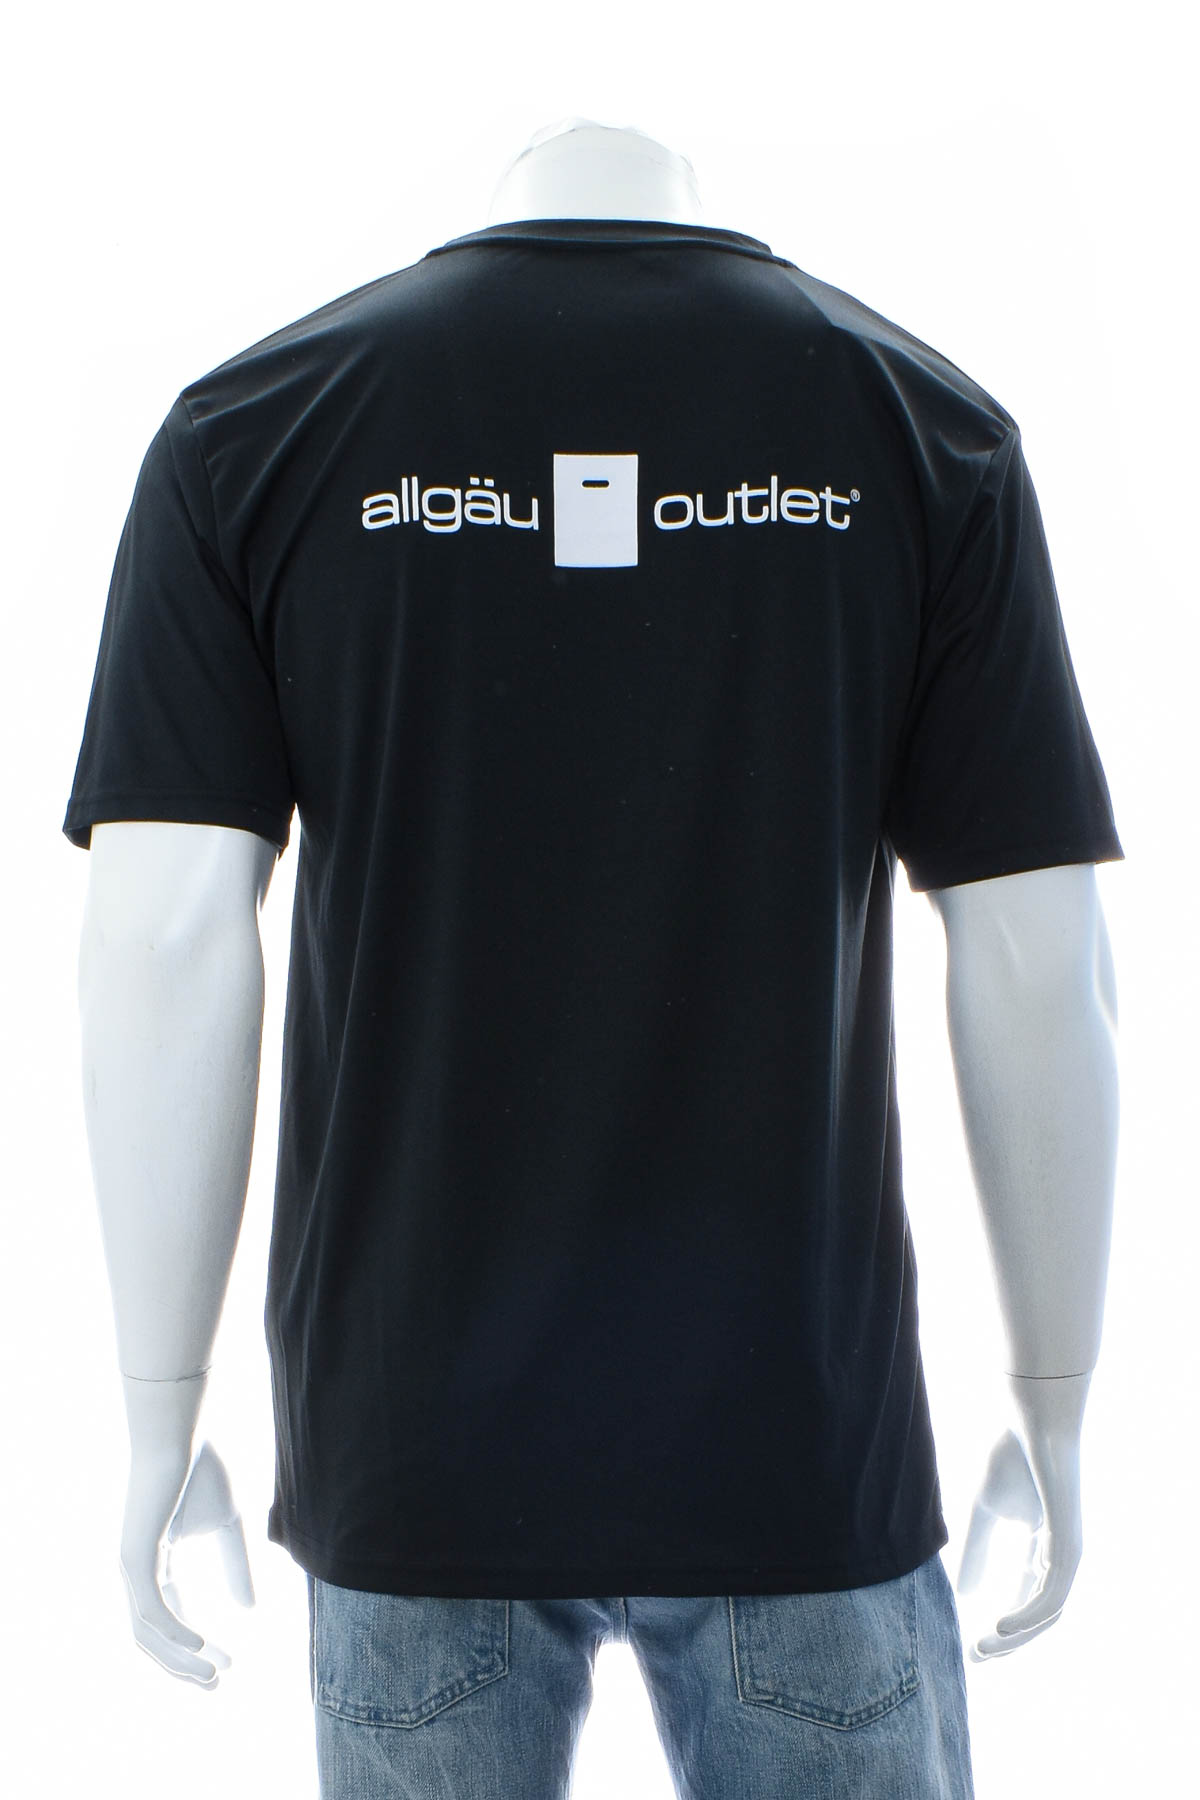 Αντρική μπλούζα - Allgau Outlet - 1